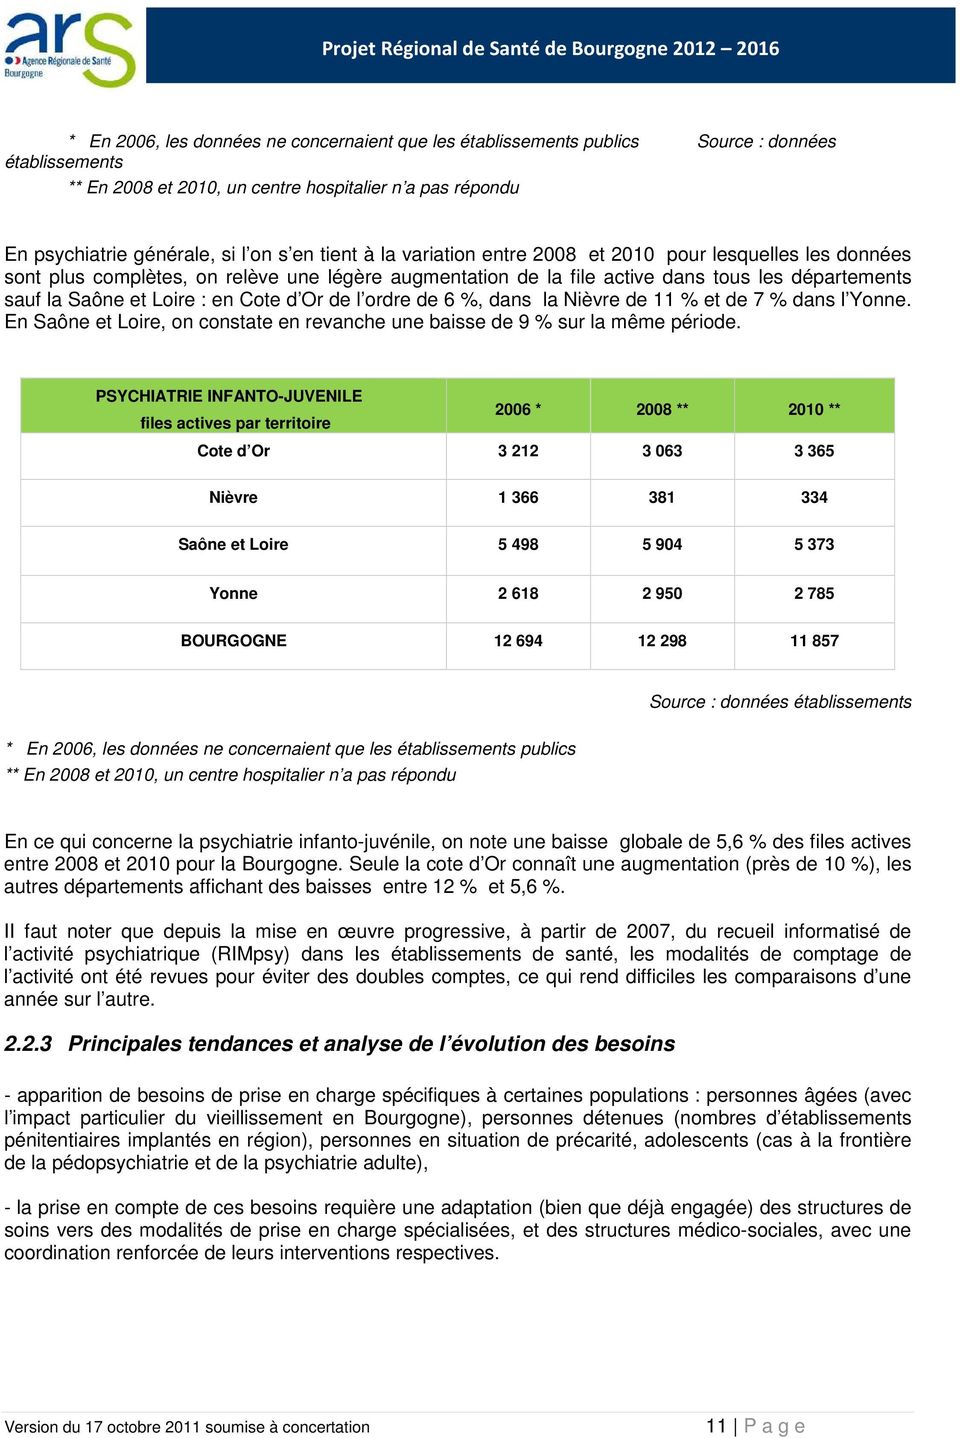 Cote d Or de l ordre de 6 %, dans la Nièvre de 11 % et de 7 % dans l Yonne. En Saône et Loire, on constate en revanche une baisse de 9 % sur la même période.